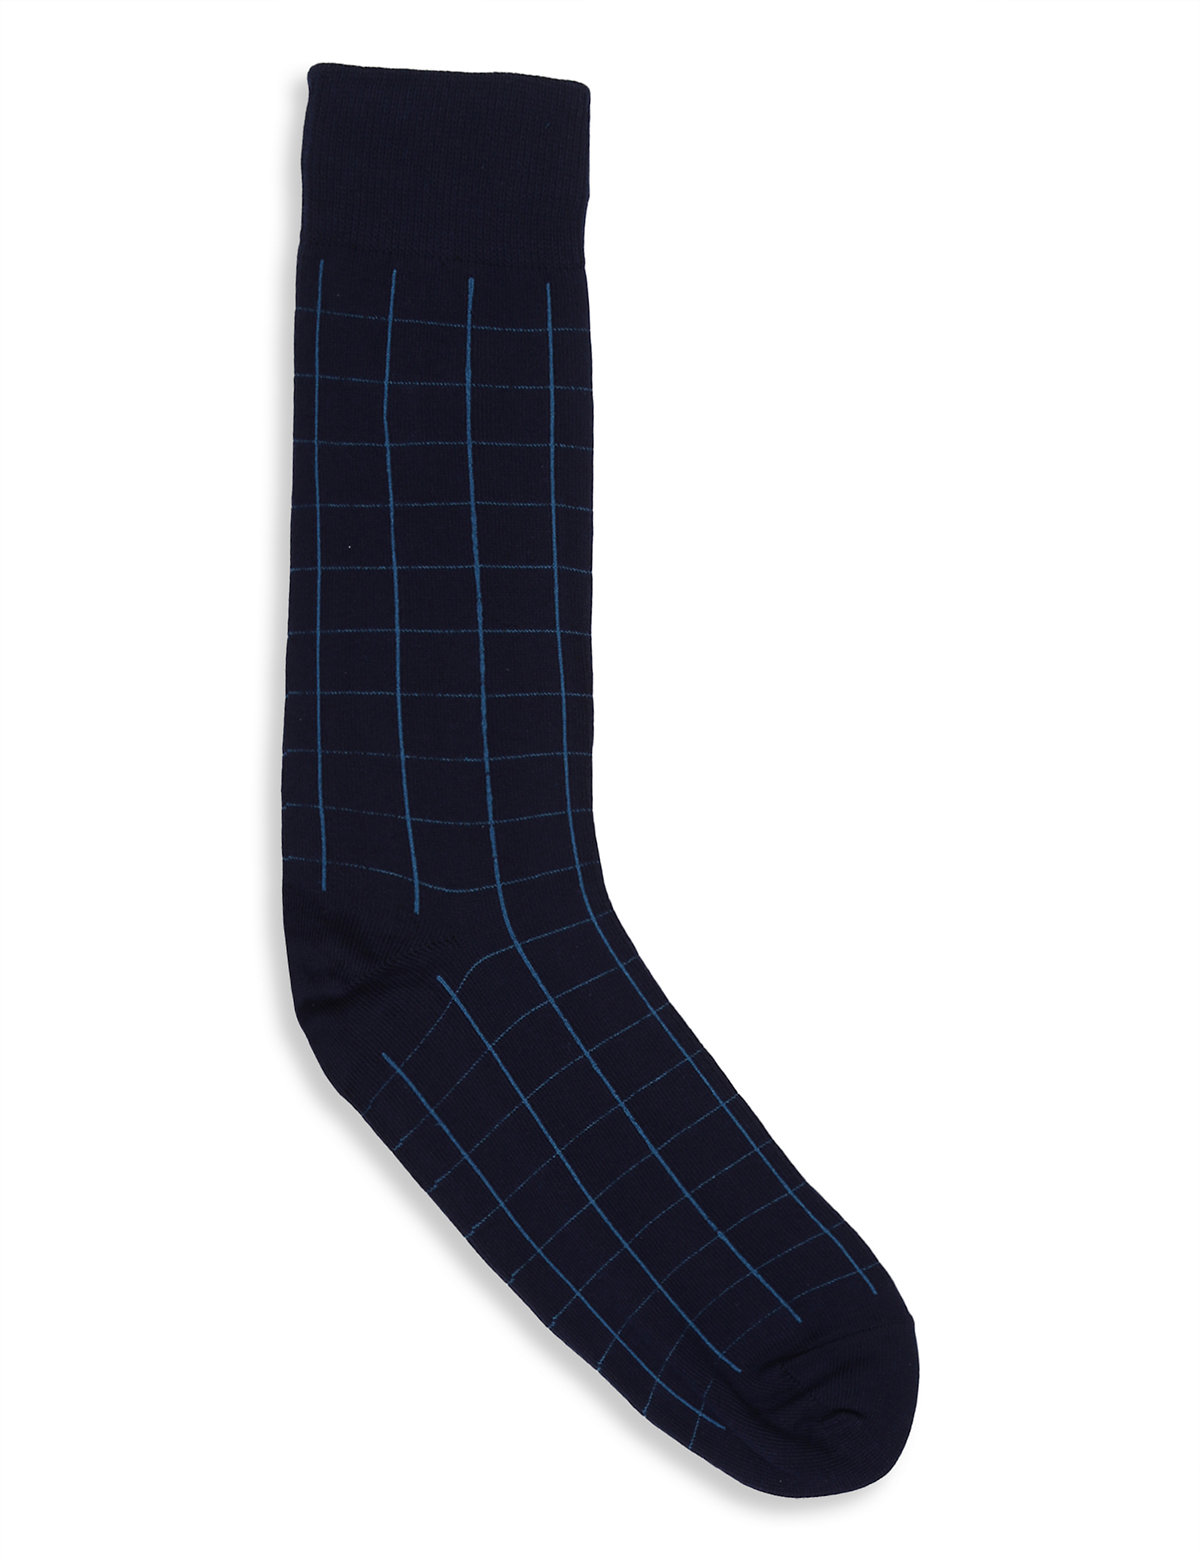 1Pk Design Socks